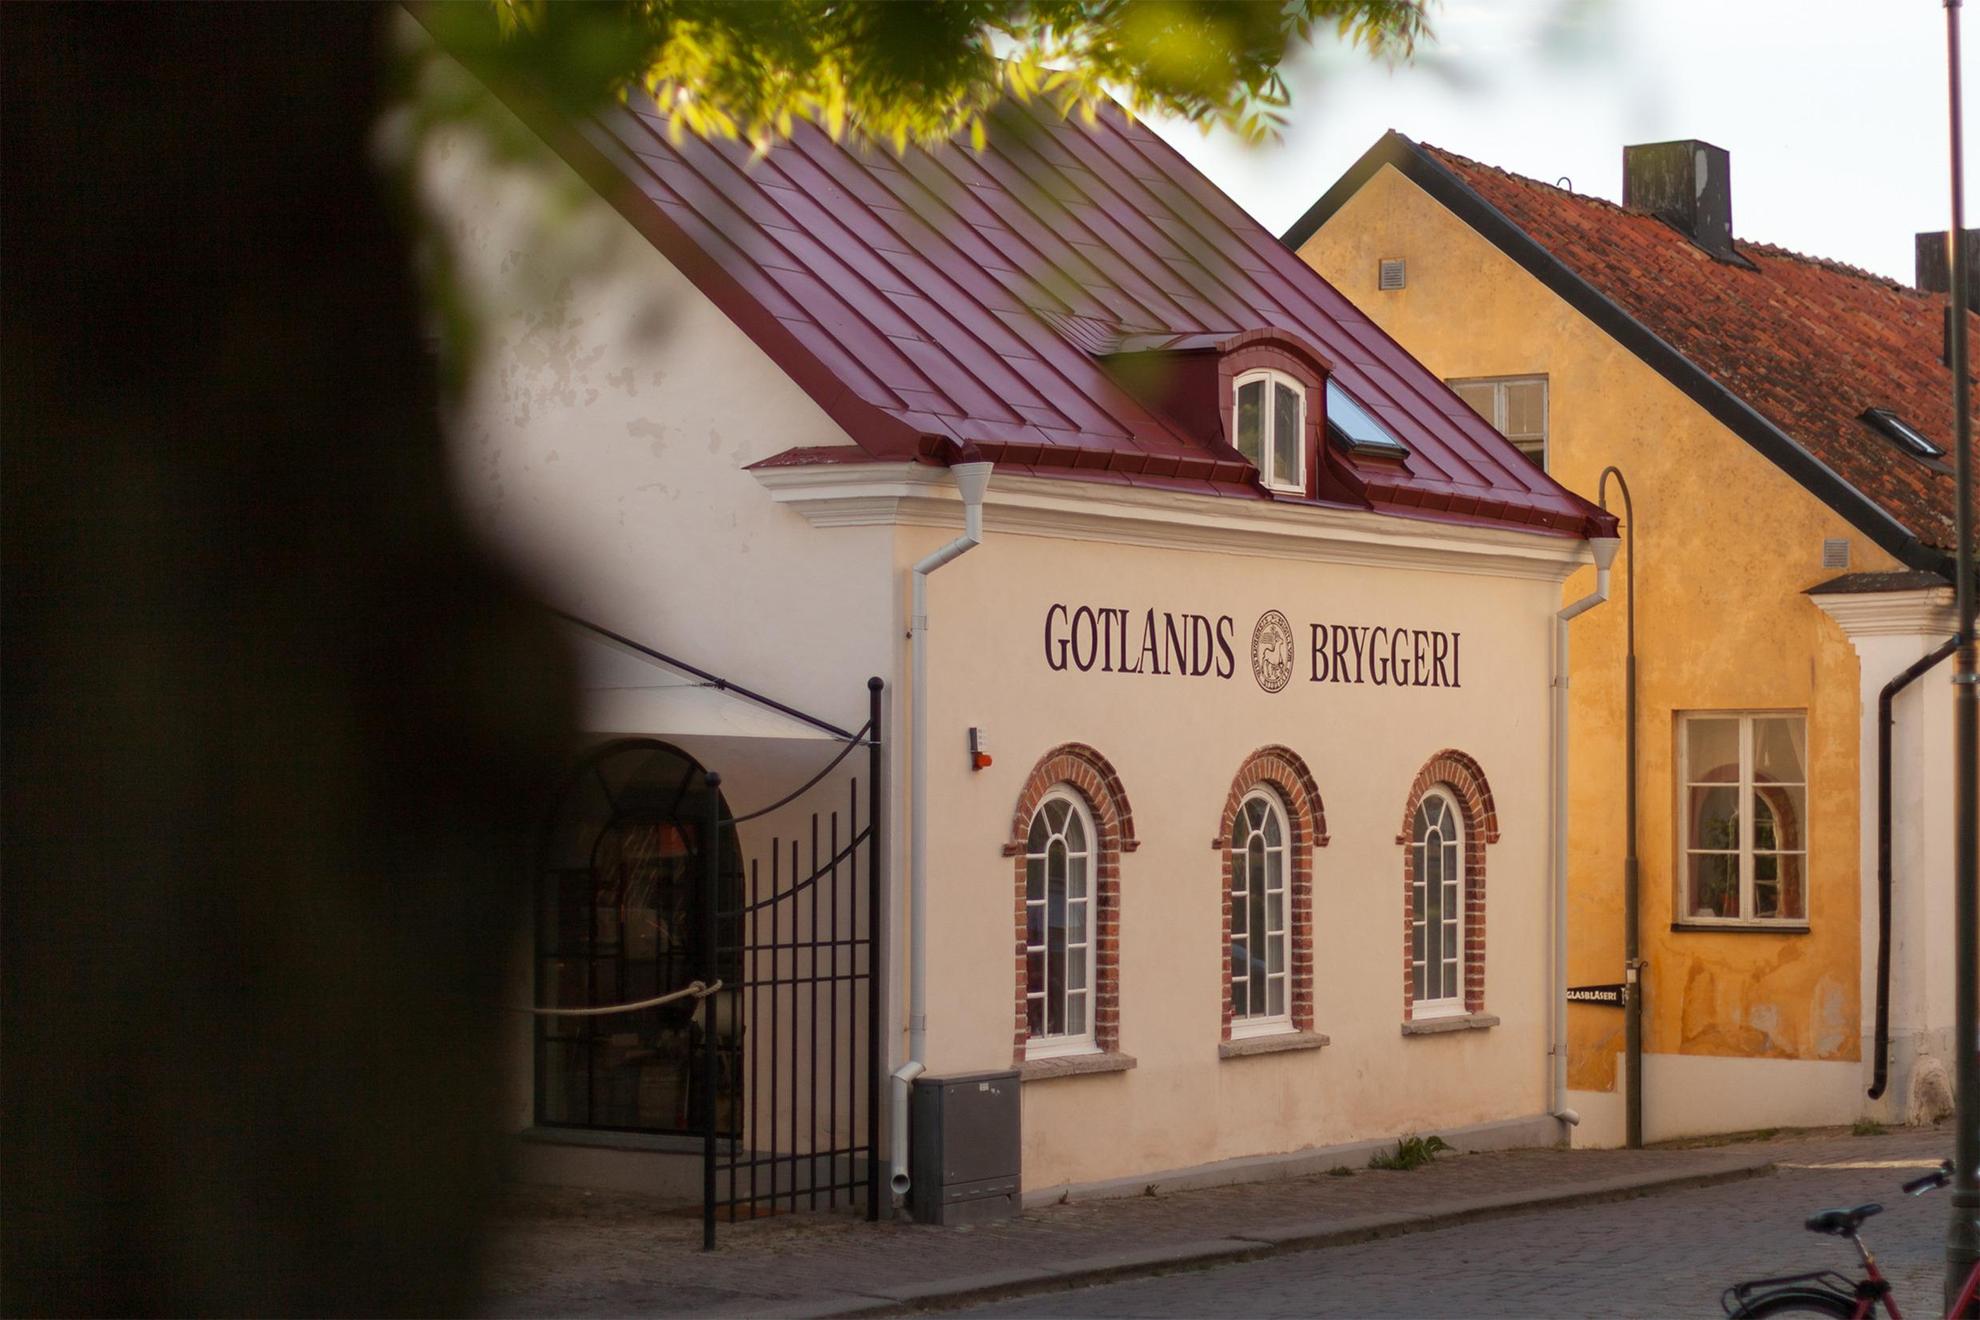 Een straat met een wit huis. Op het huis staat "Gotlands Bryggeri".